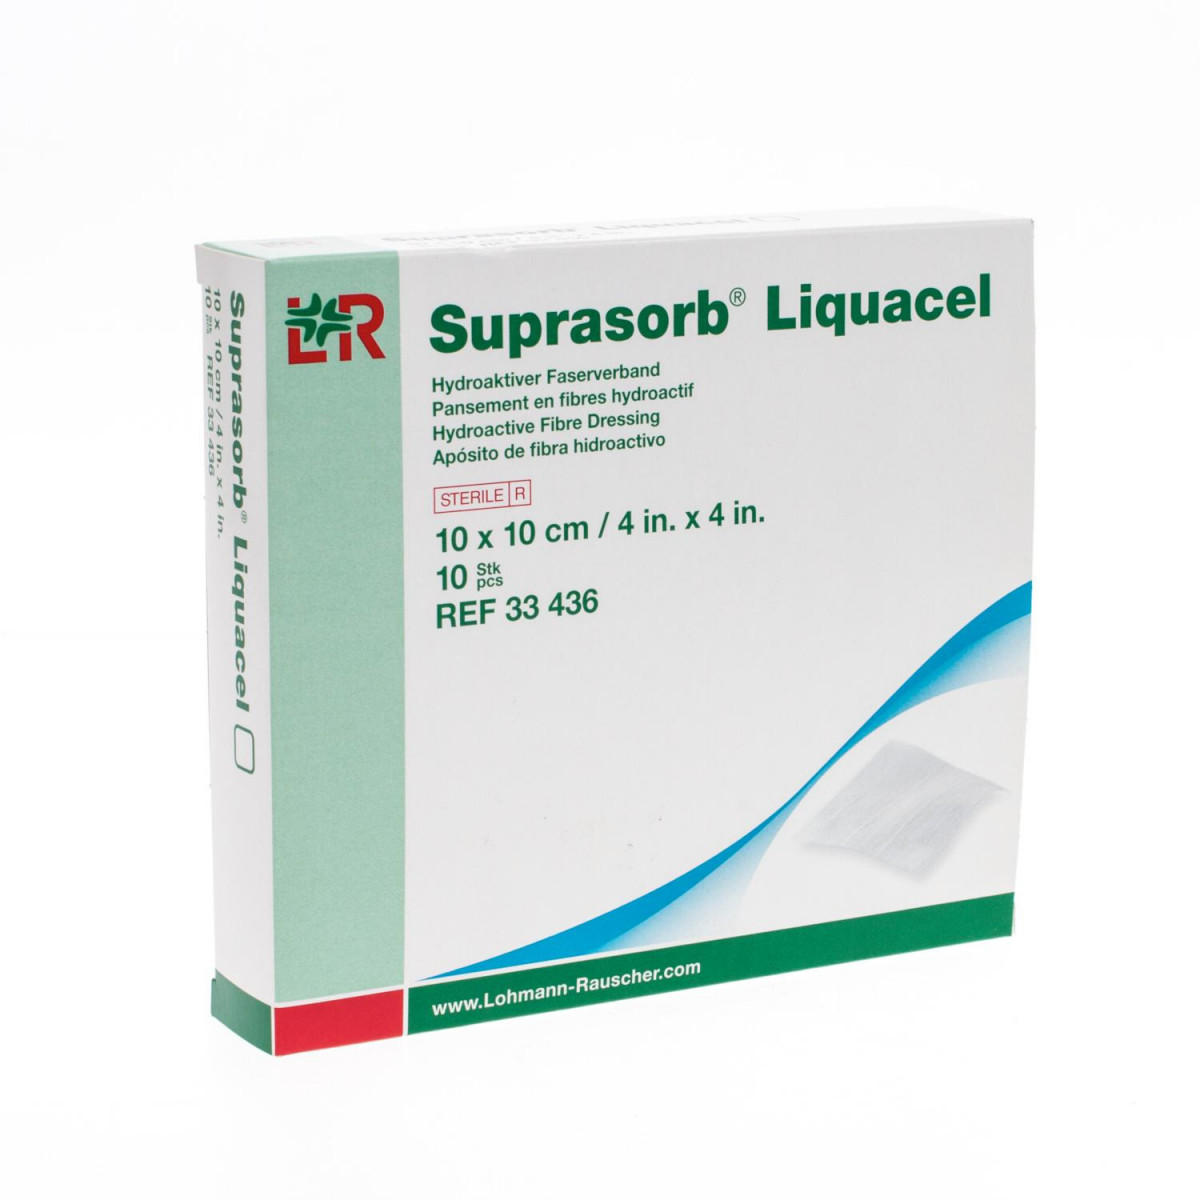 Suprasorb® Liquacel